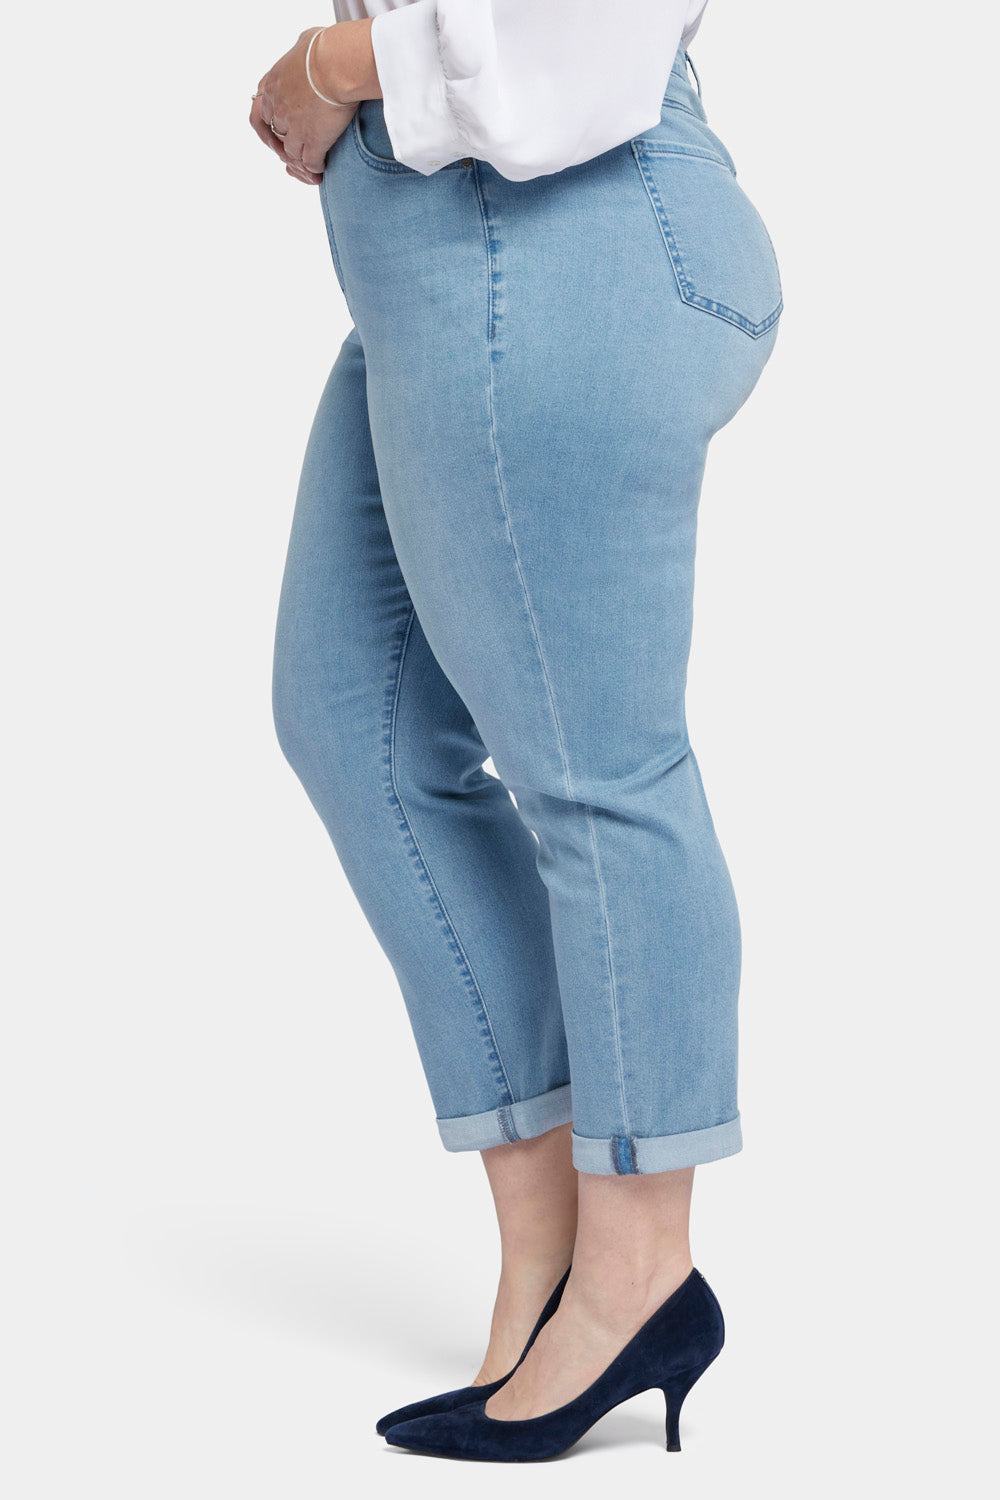 NYDJ Margot Girlfriend Jeans In Plus Size In Cool Embrace® Denim With Roll Cuffs - Kingston